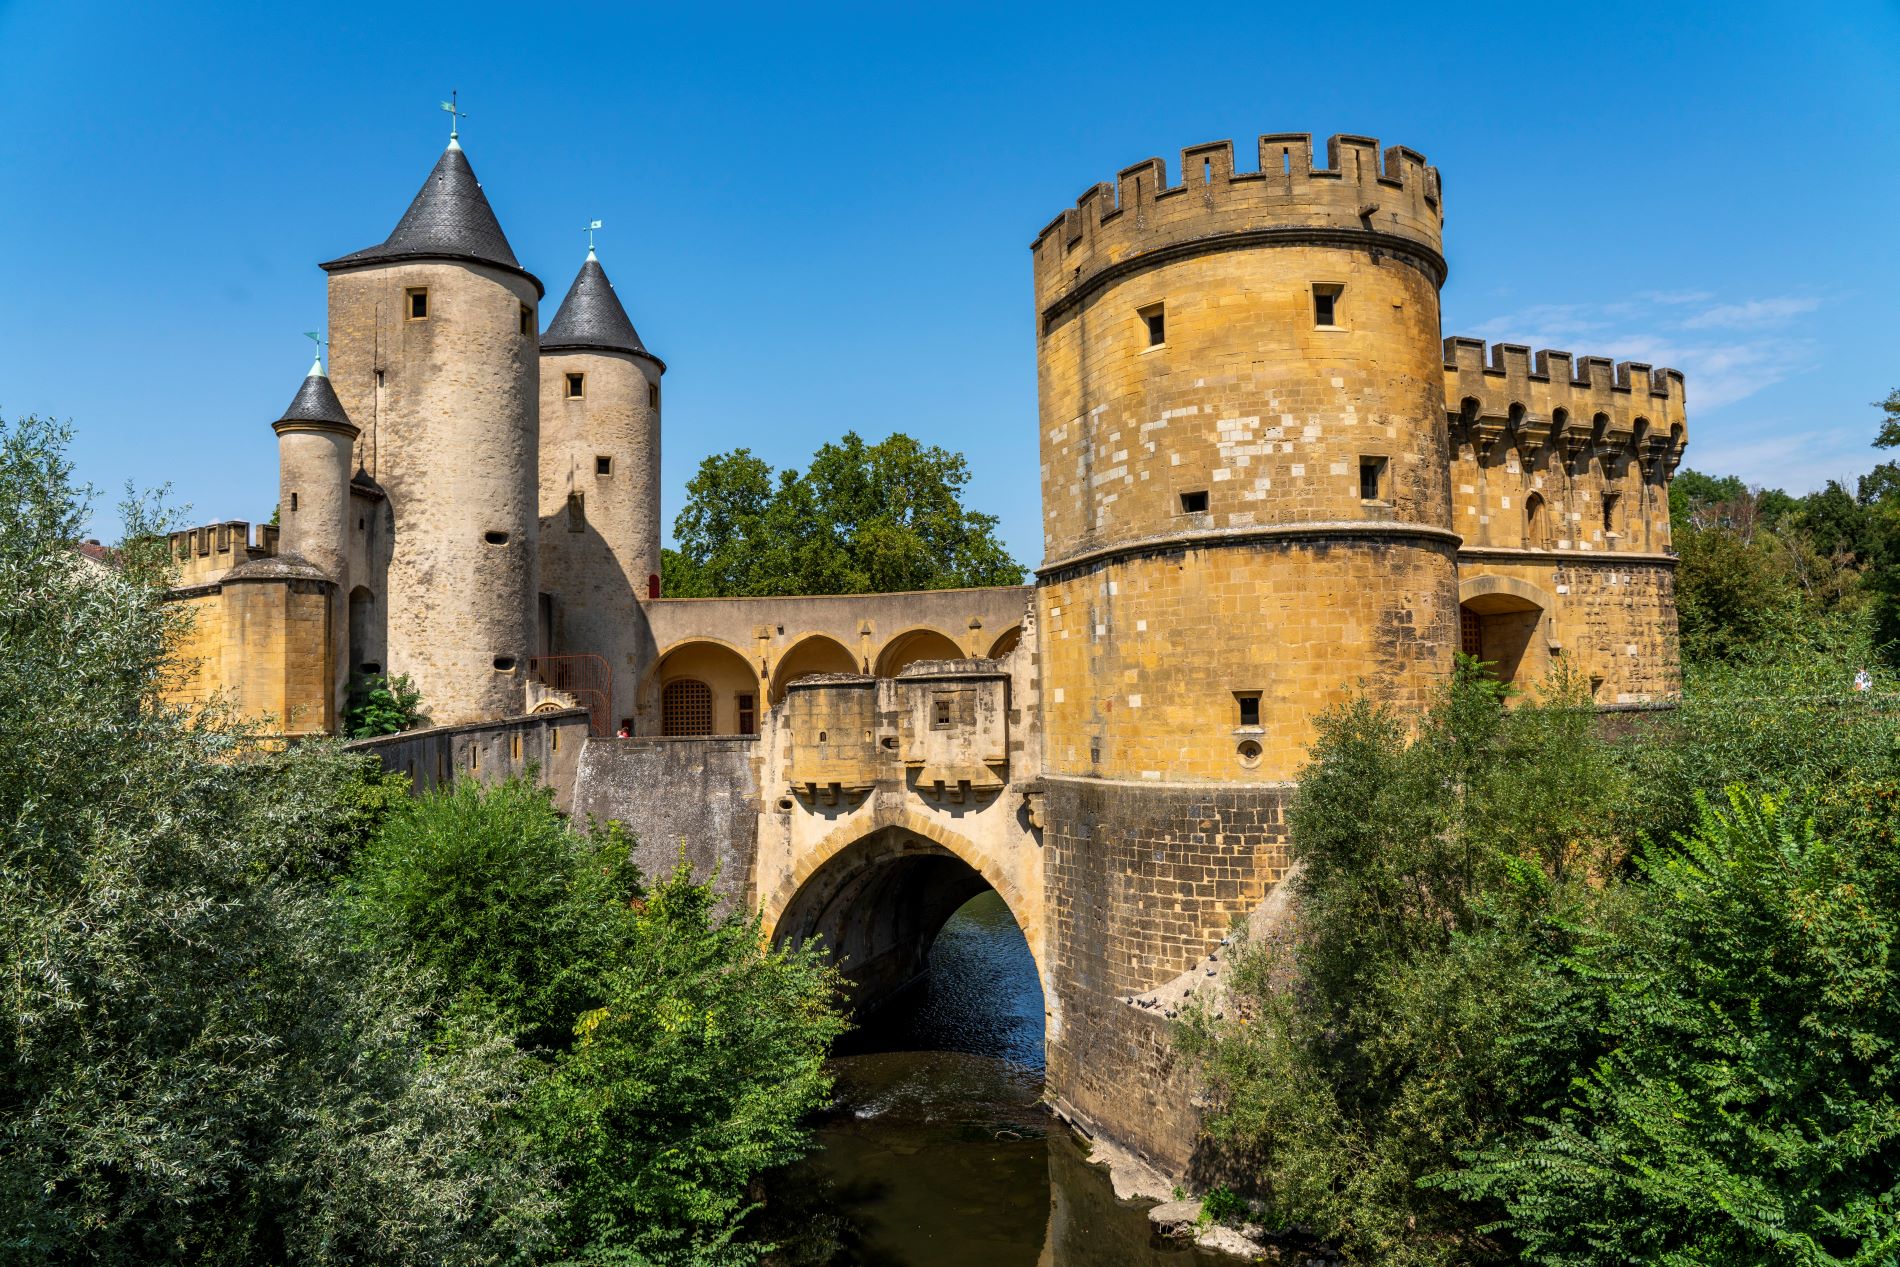 Eine alte Festung überspannt den Fluss. Sie ist aus gelben und grauen Ziegeln gebaut und hat drei Türme auf der linken Seite und große runde Türme auf der rechten Seite.